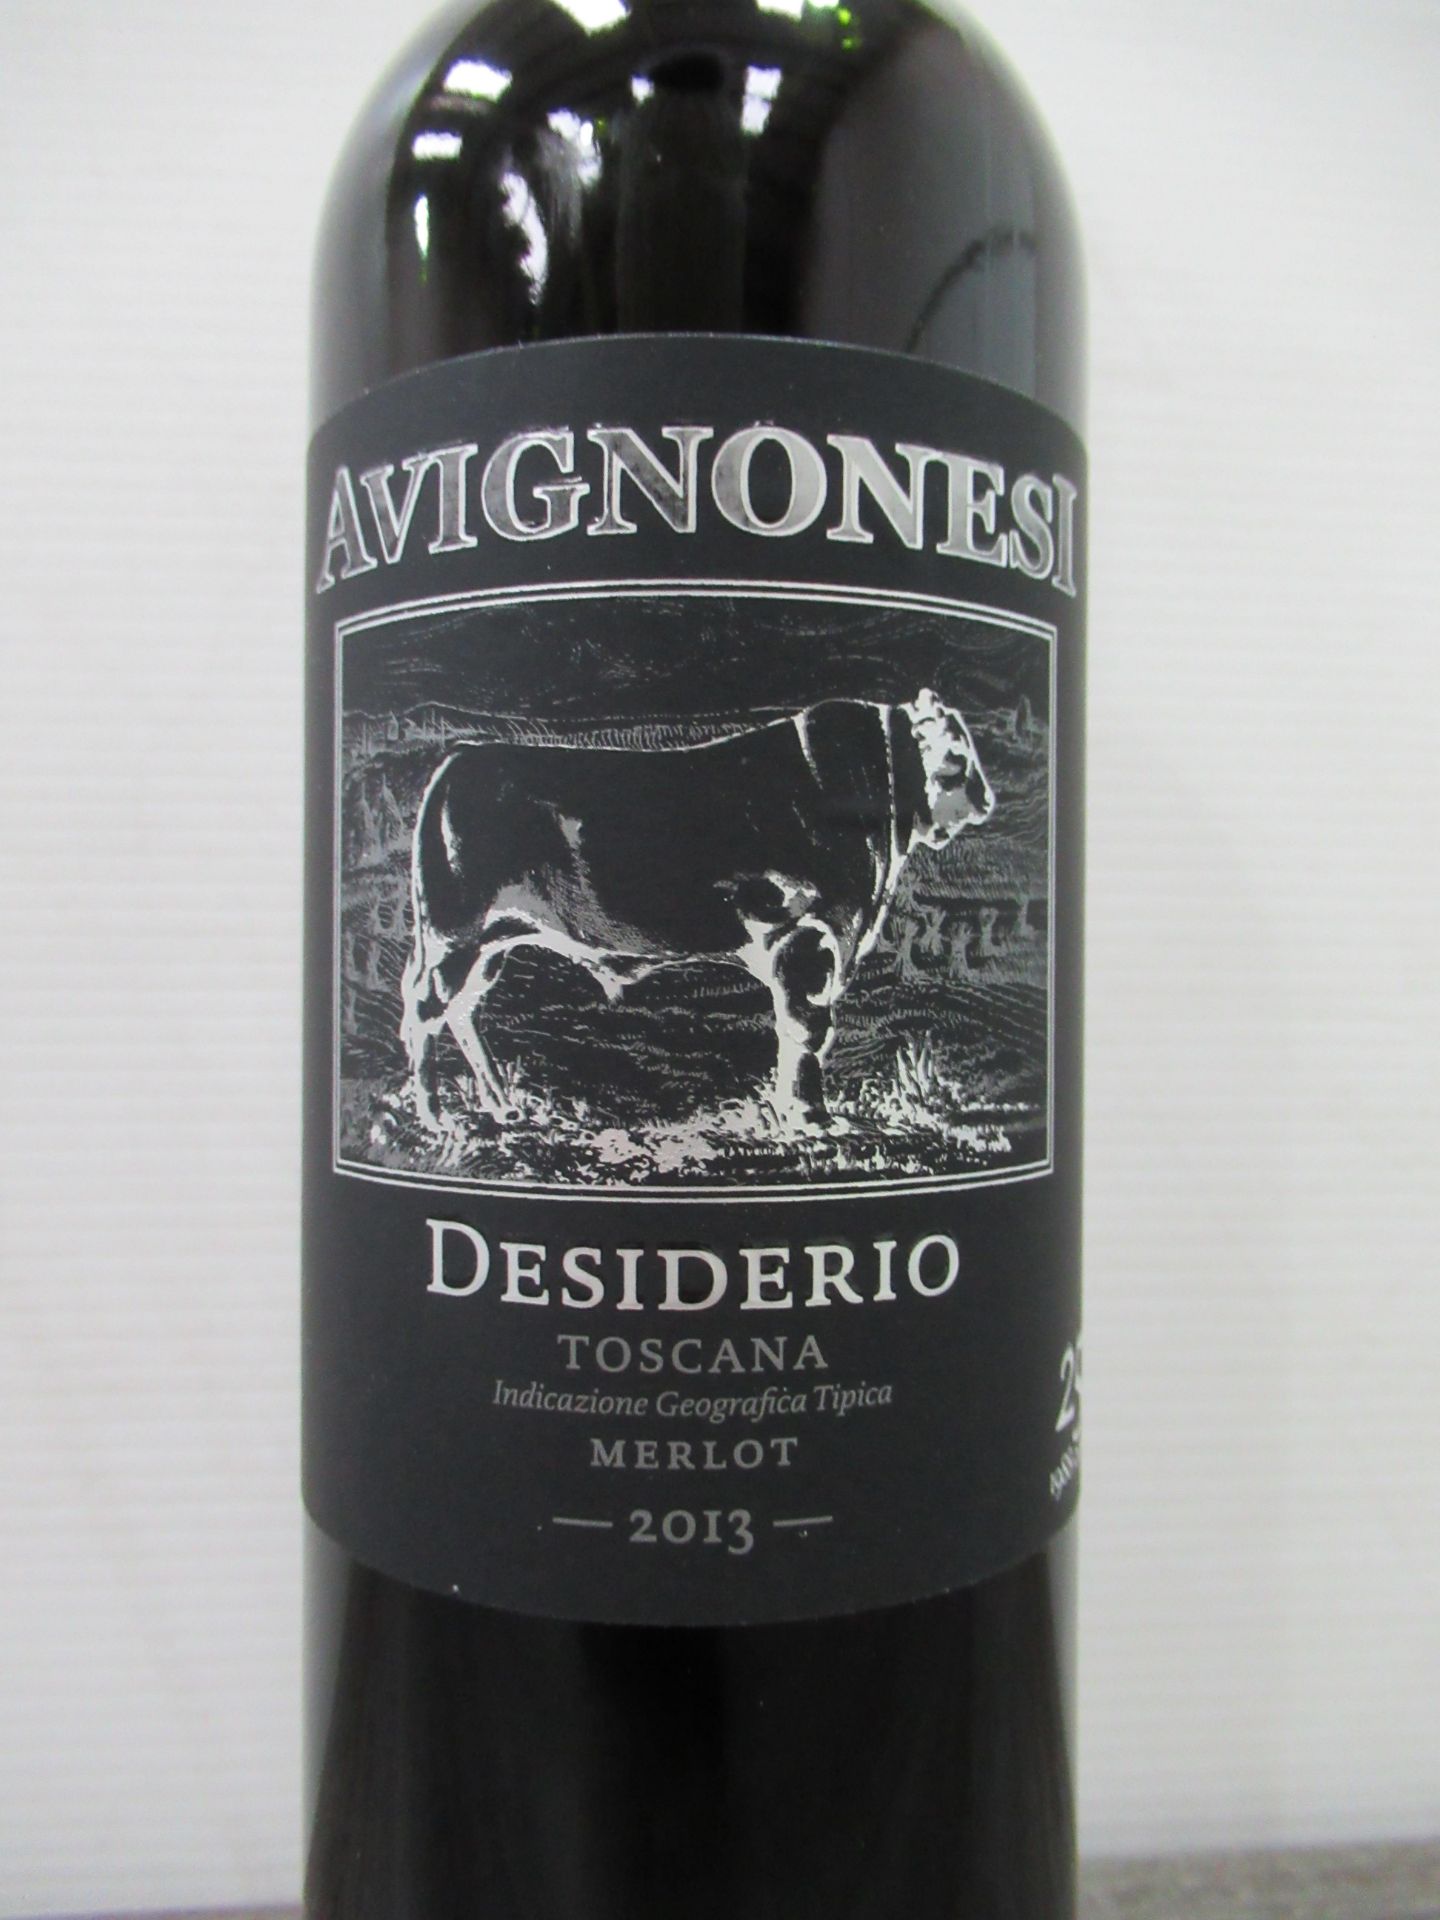 6 x Bottles of Avignonesi, Desiderio, Toscana Merlot 2013 - Image 2 of 3